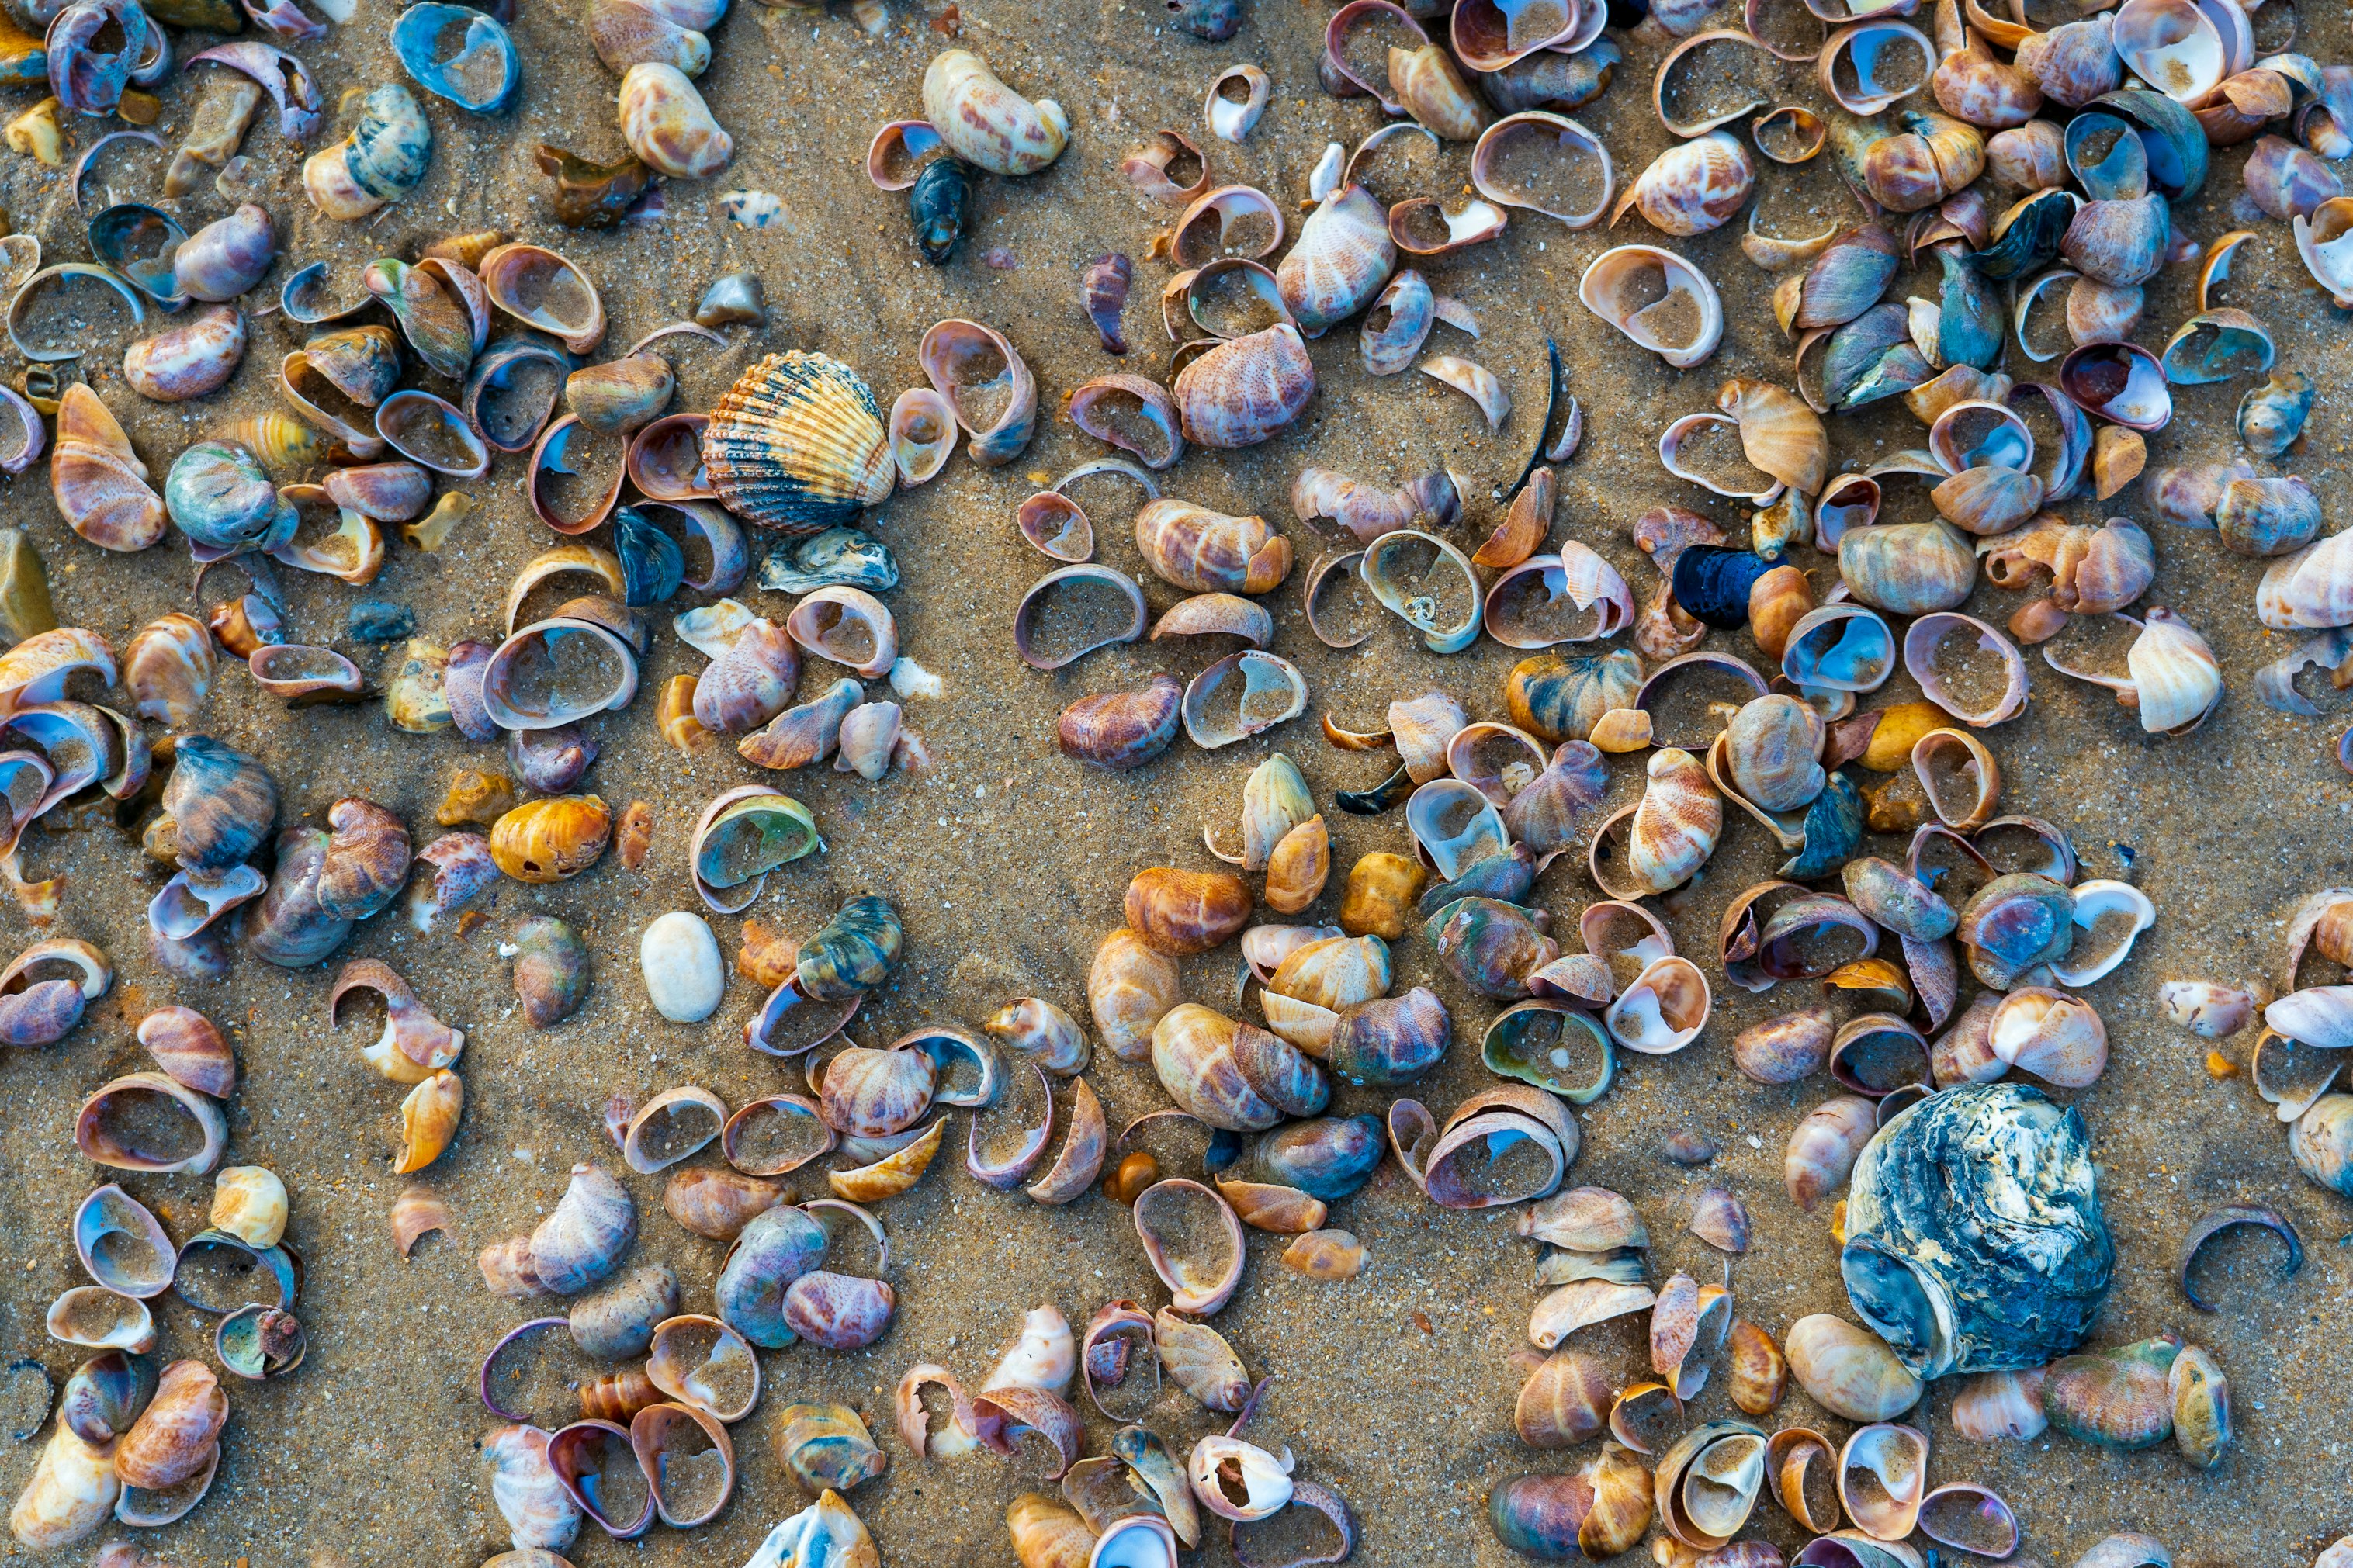 brown and gray seashells on gray sand